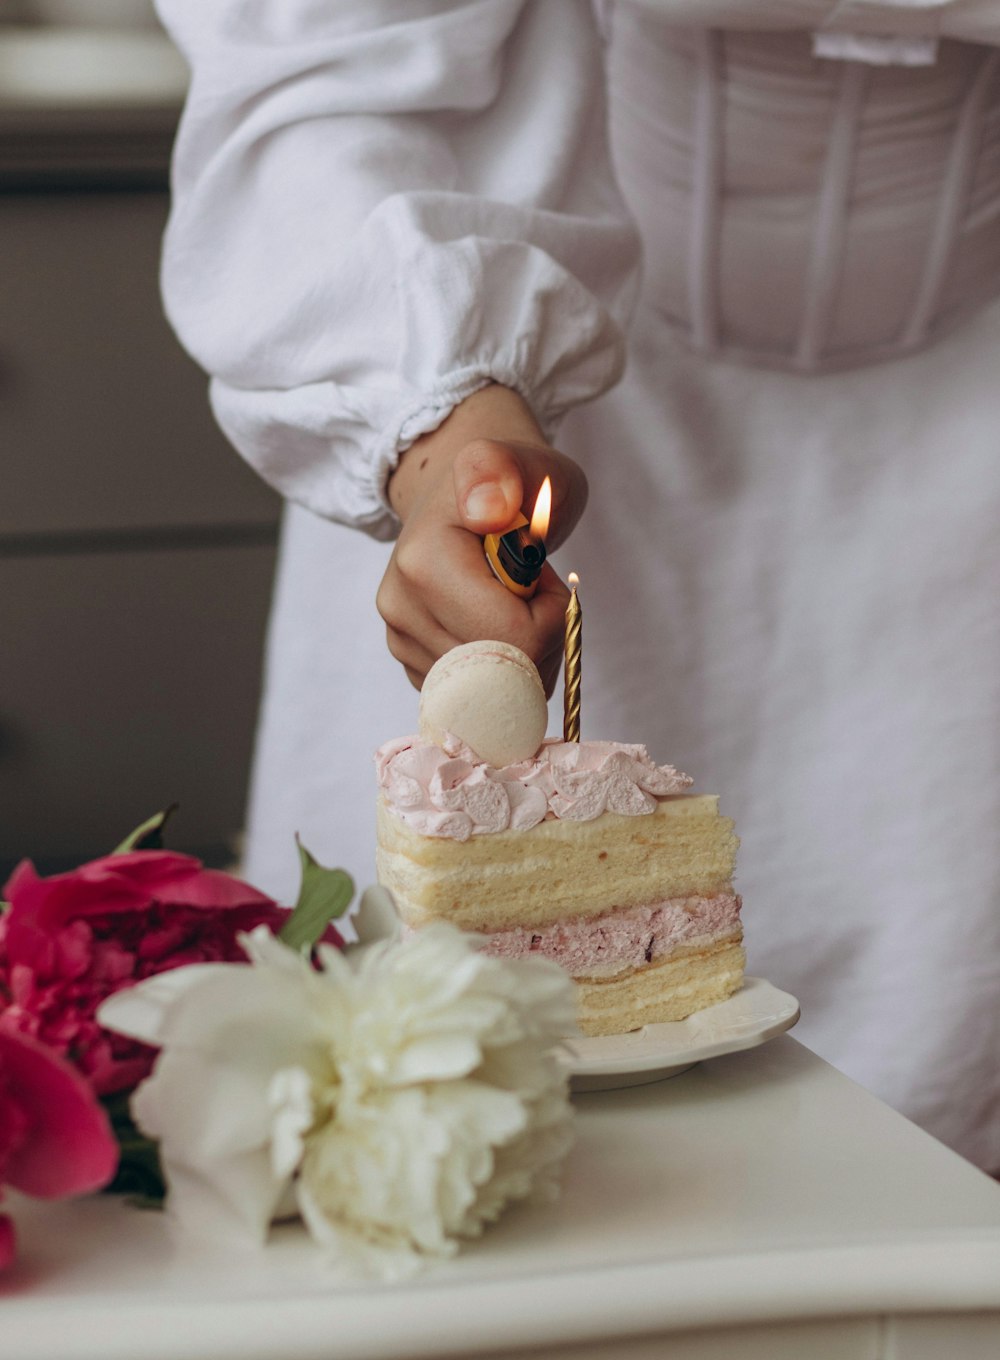 Una persona encendiendo una vela en un pastel